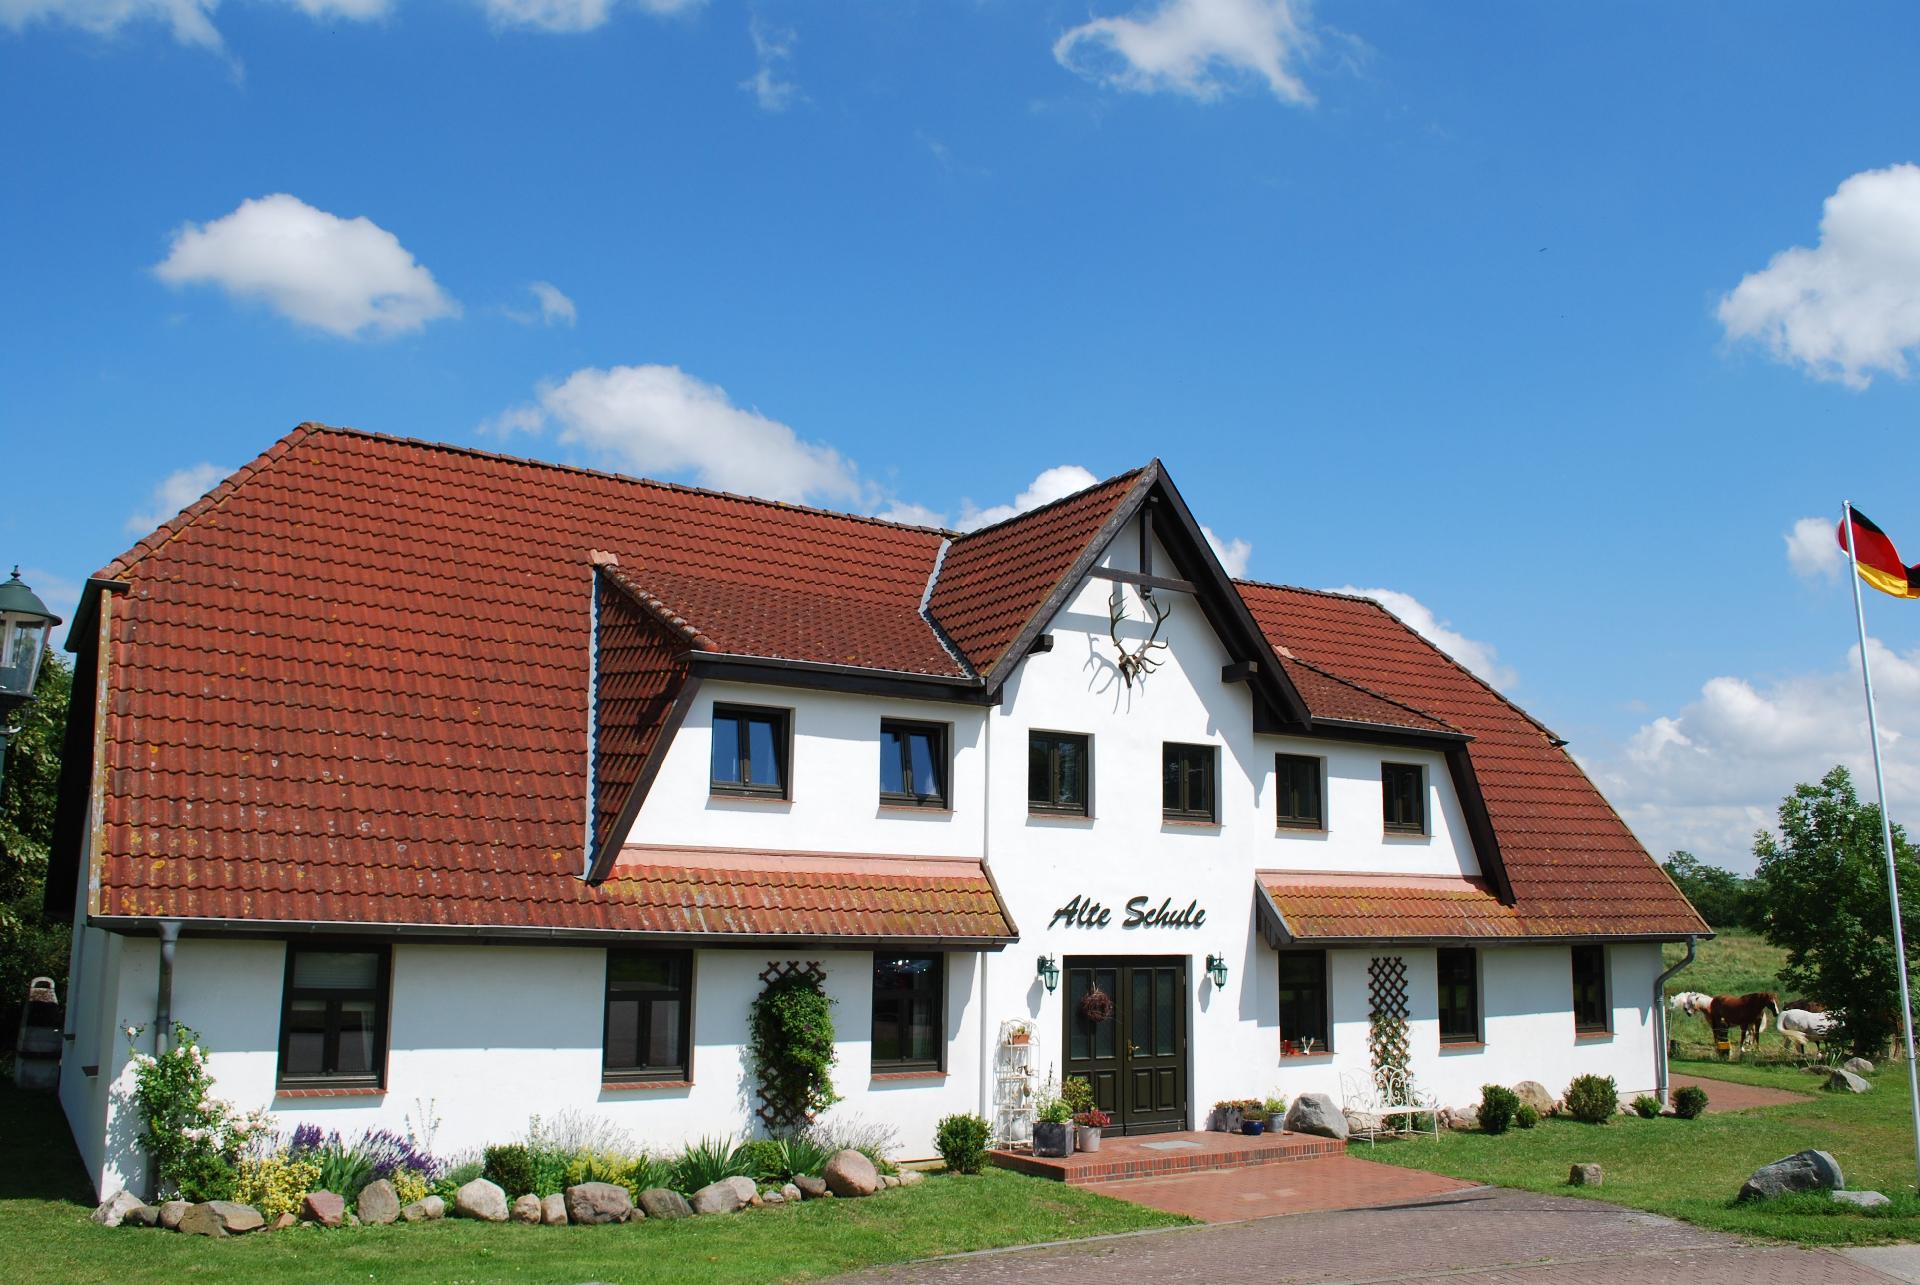 Wohnung in Dargun mit Terrasse, Garten und Grill Ferienwohnung in Deutschland